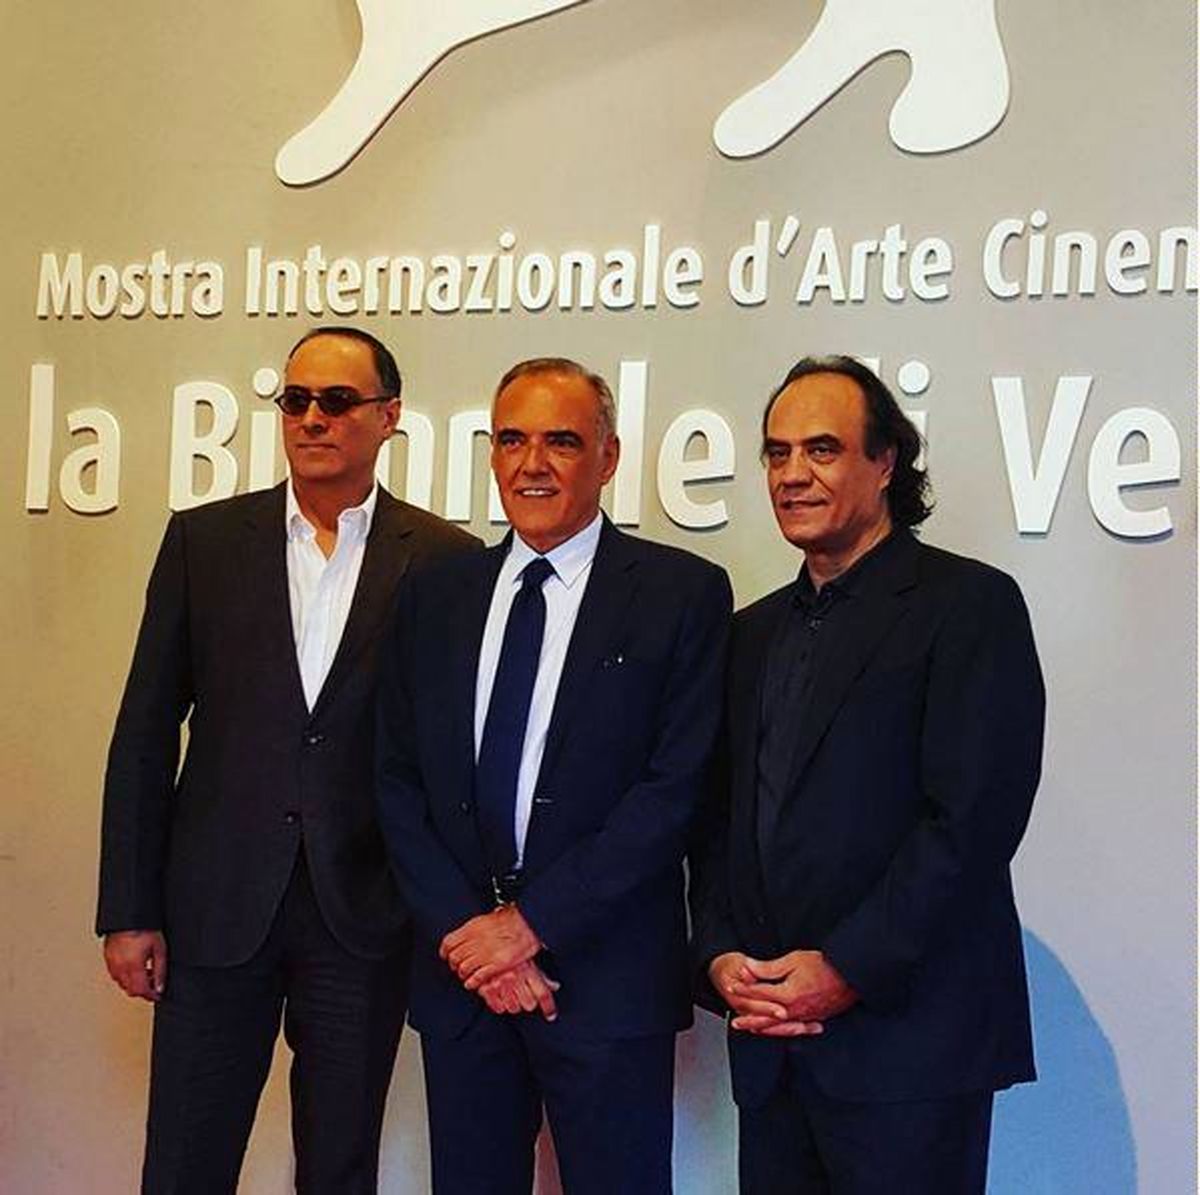 آغاز جشنواره ونیز با یک مستند واقعی از عباس کیارستمی